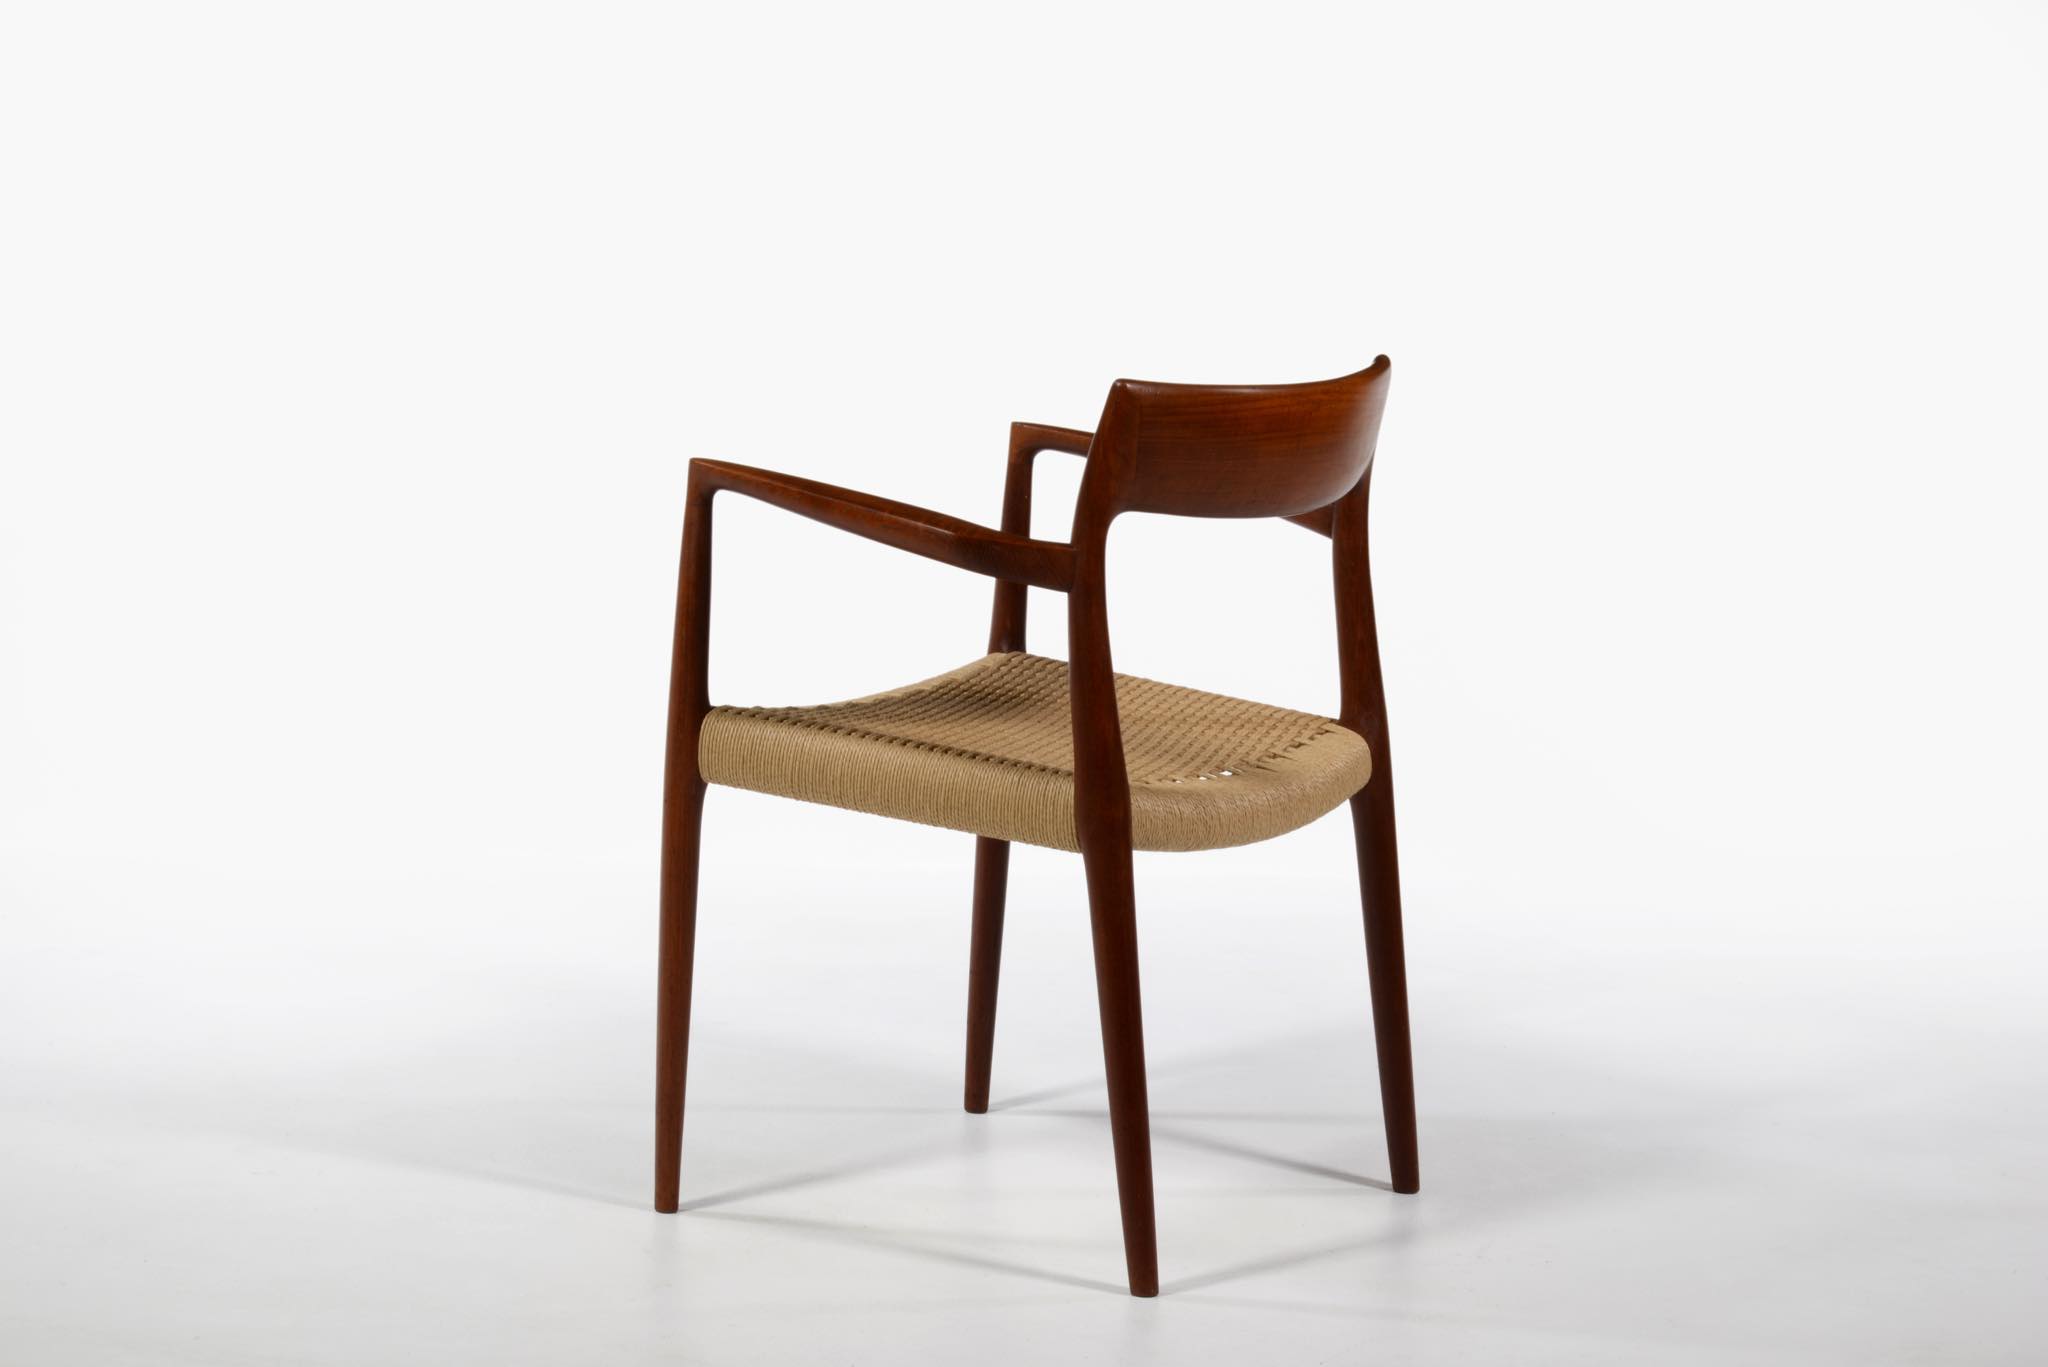 N.O. Møller / J.L. Møller “Model 57” Arm chair in Teak｜Luca 